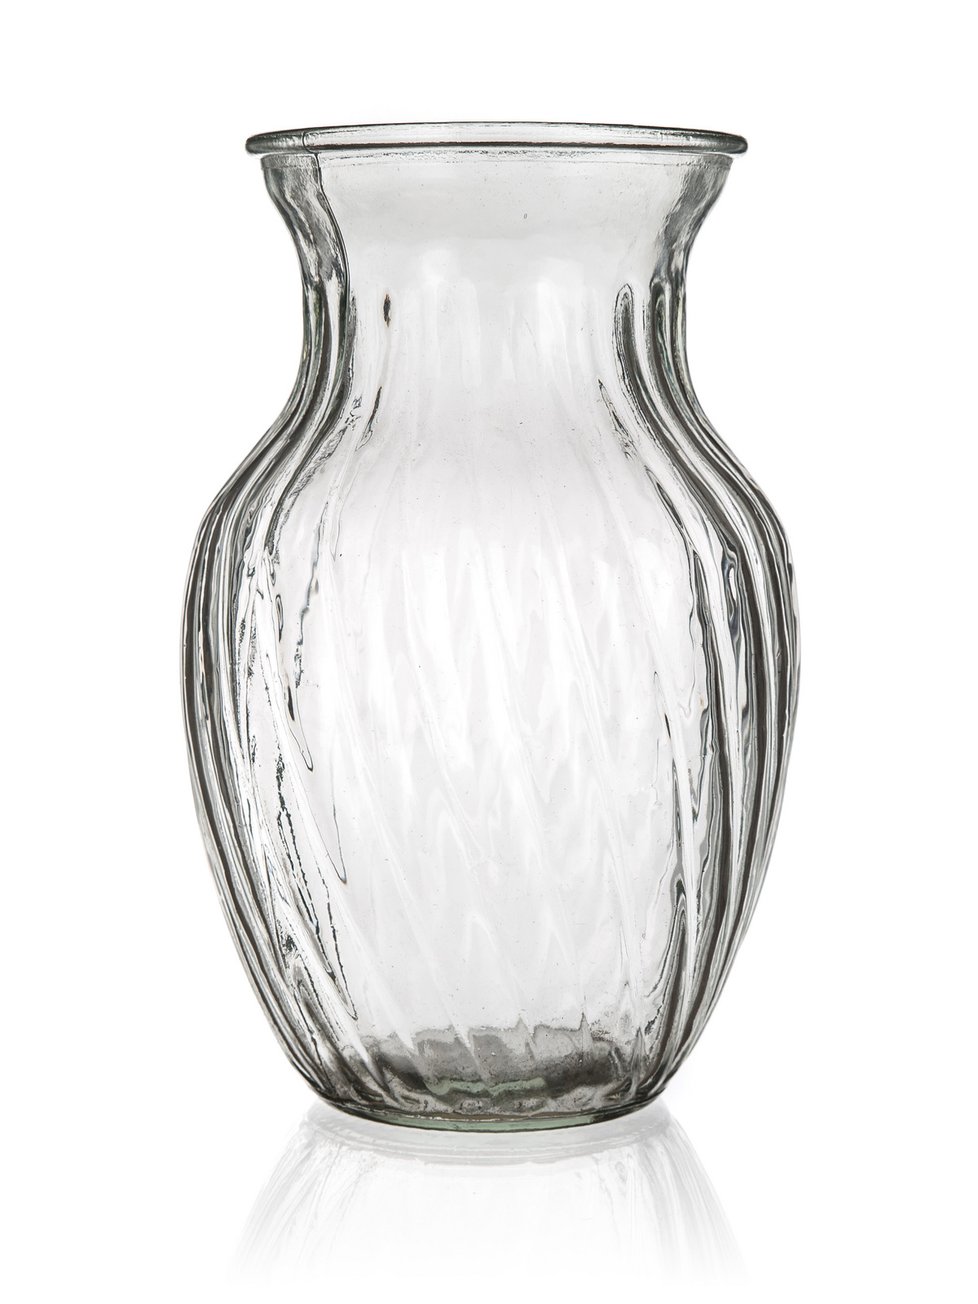 Skleněná váza Molla, 199 Kč